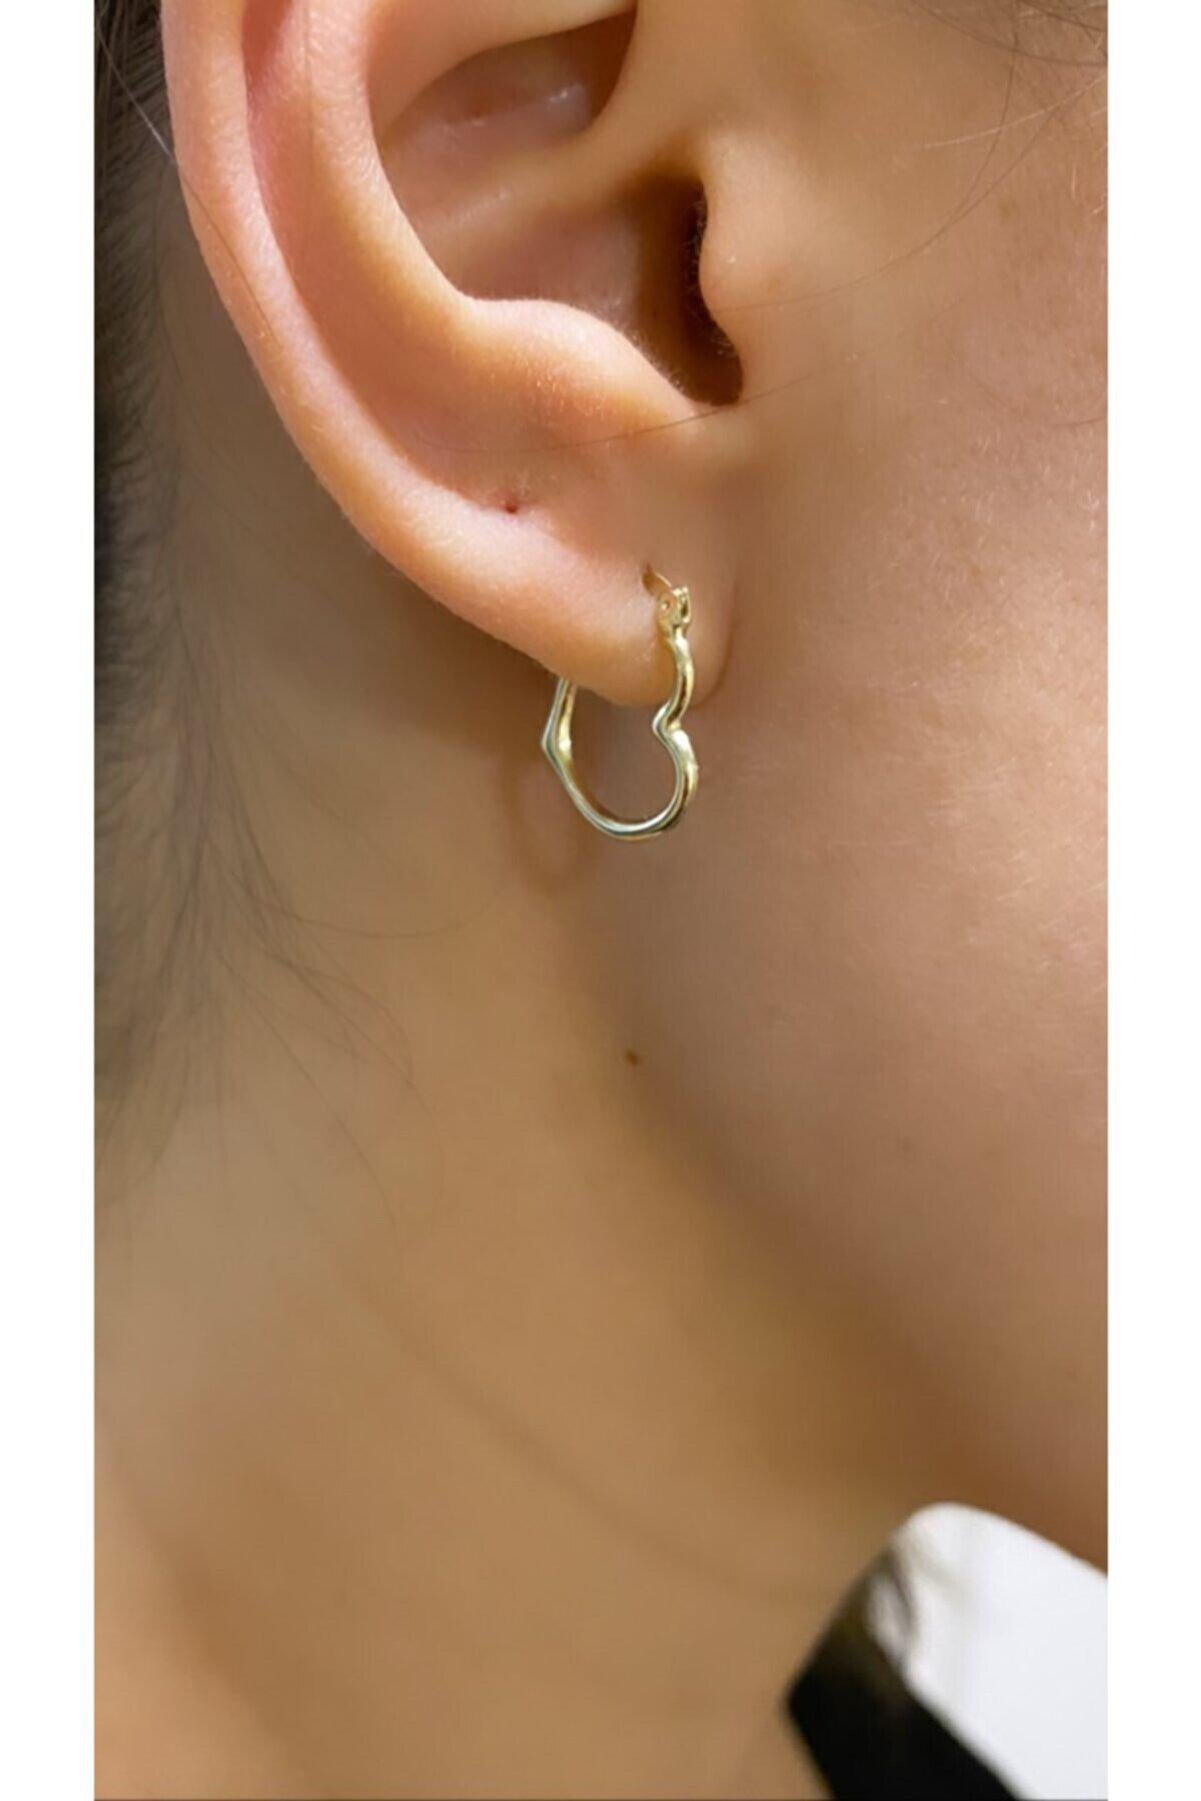 Modern Heart Gold Earrings Studs, Tiny Heart Earrings, Heart Huggy Earrings